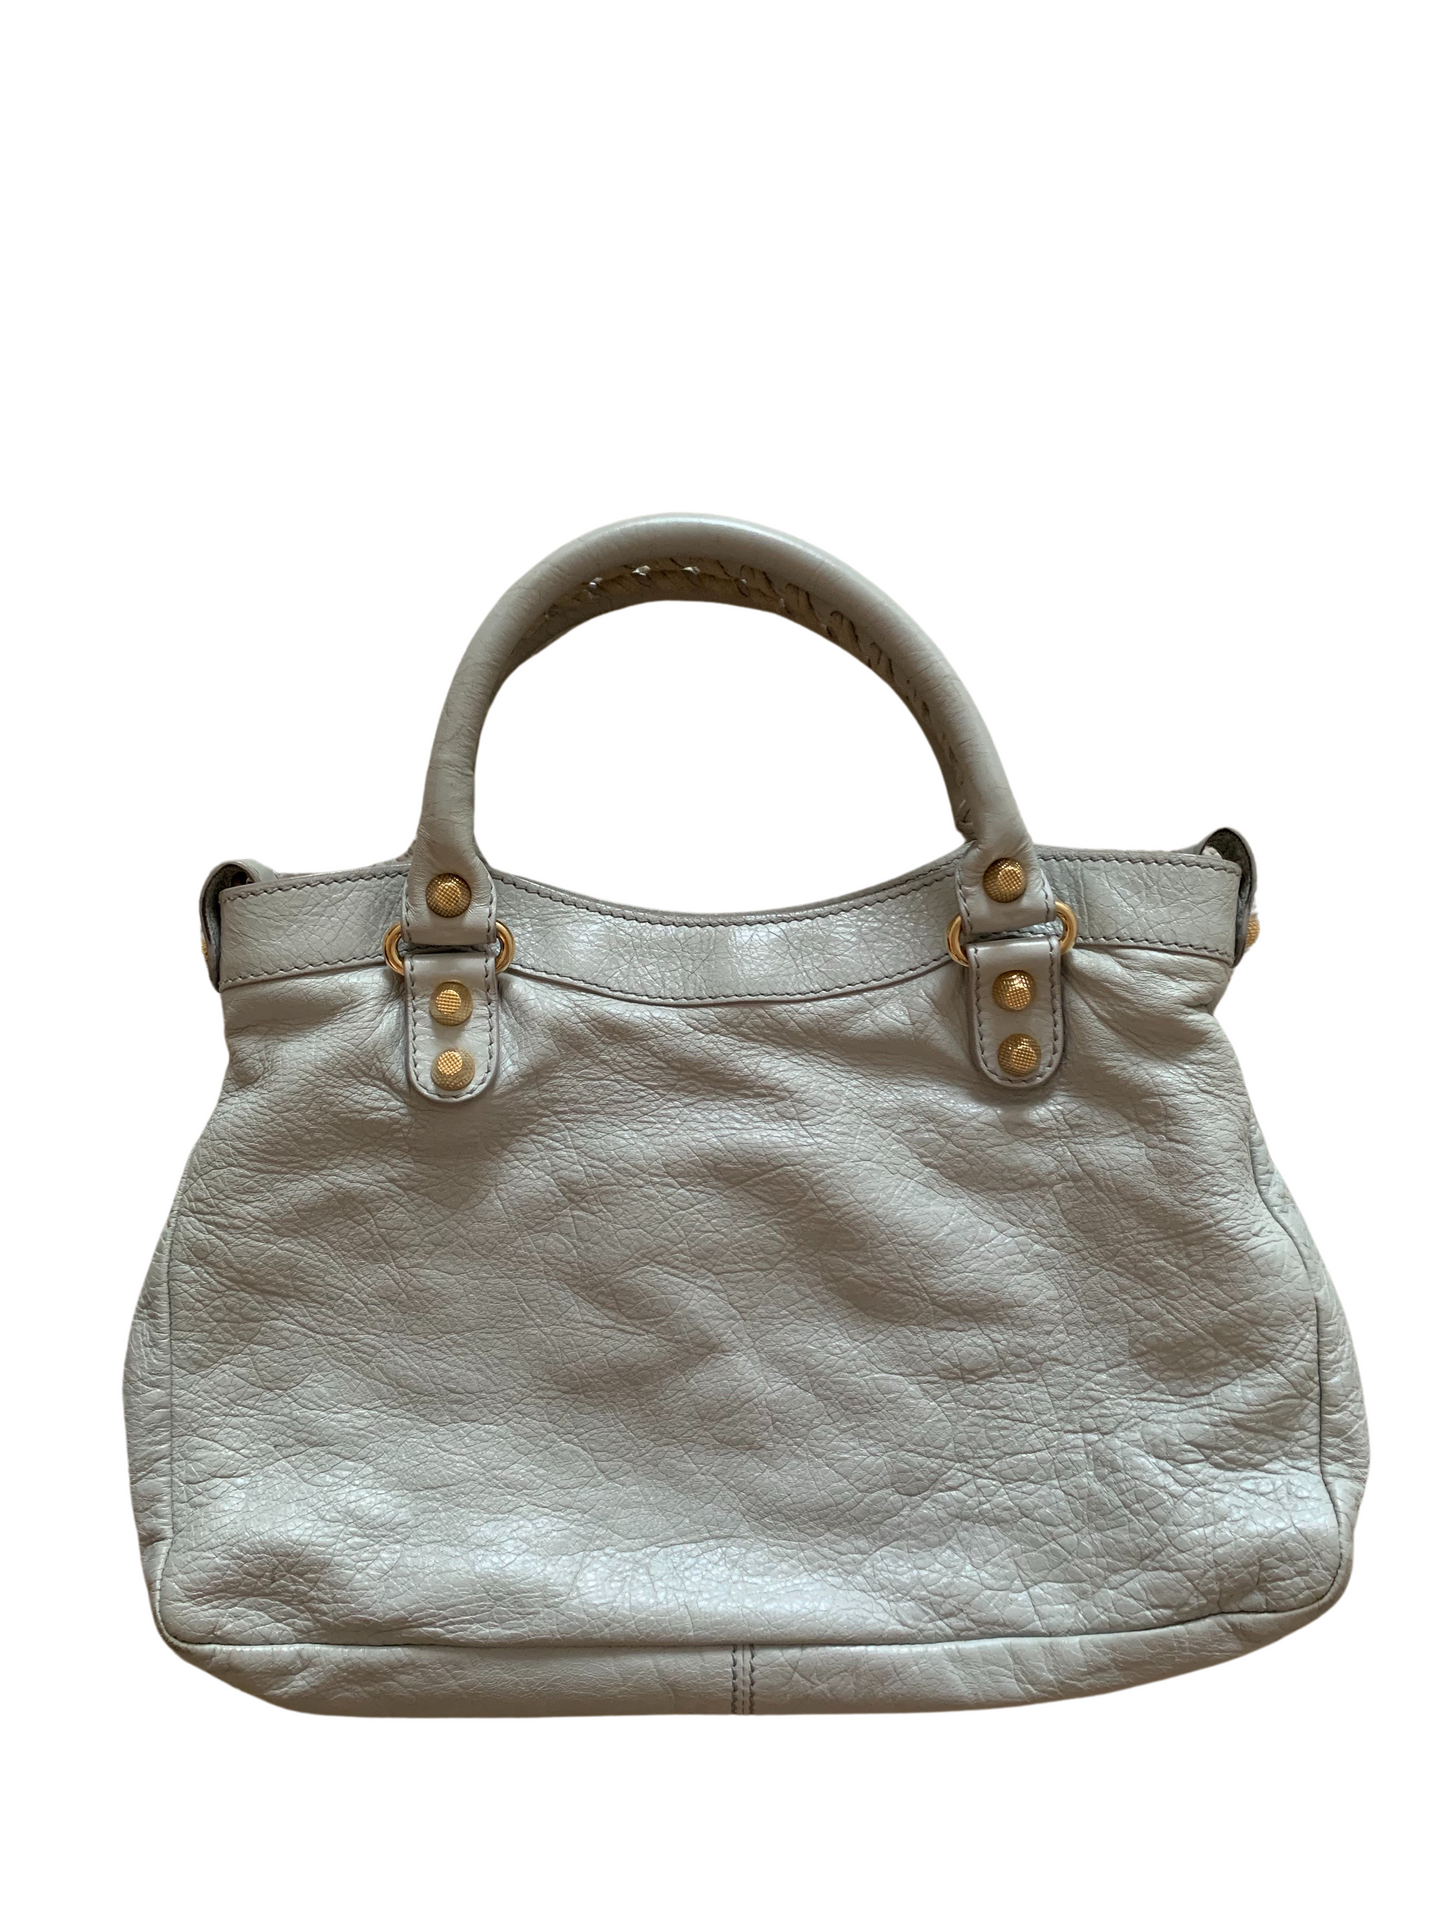 Balenciaga The Giant Town Grey Leather Handbag